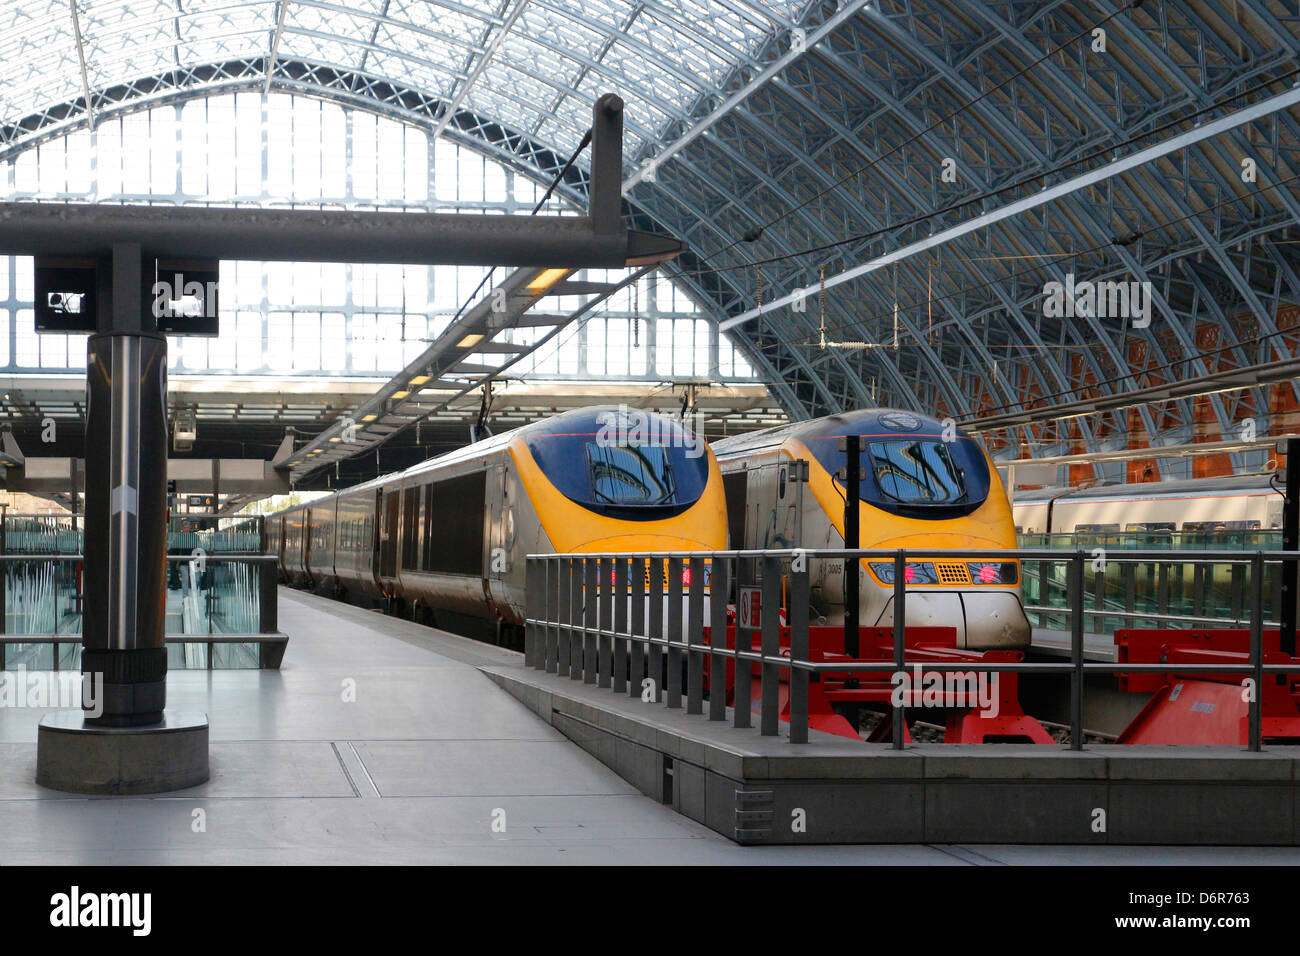 Les trains en attente de départ à la gare de St Pancras International Londres St Pancras_130802 Banque D'Images